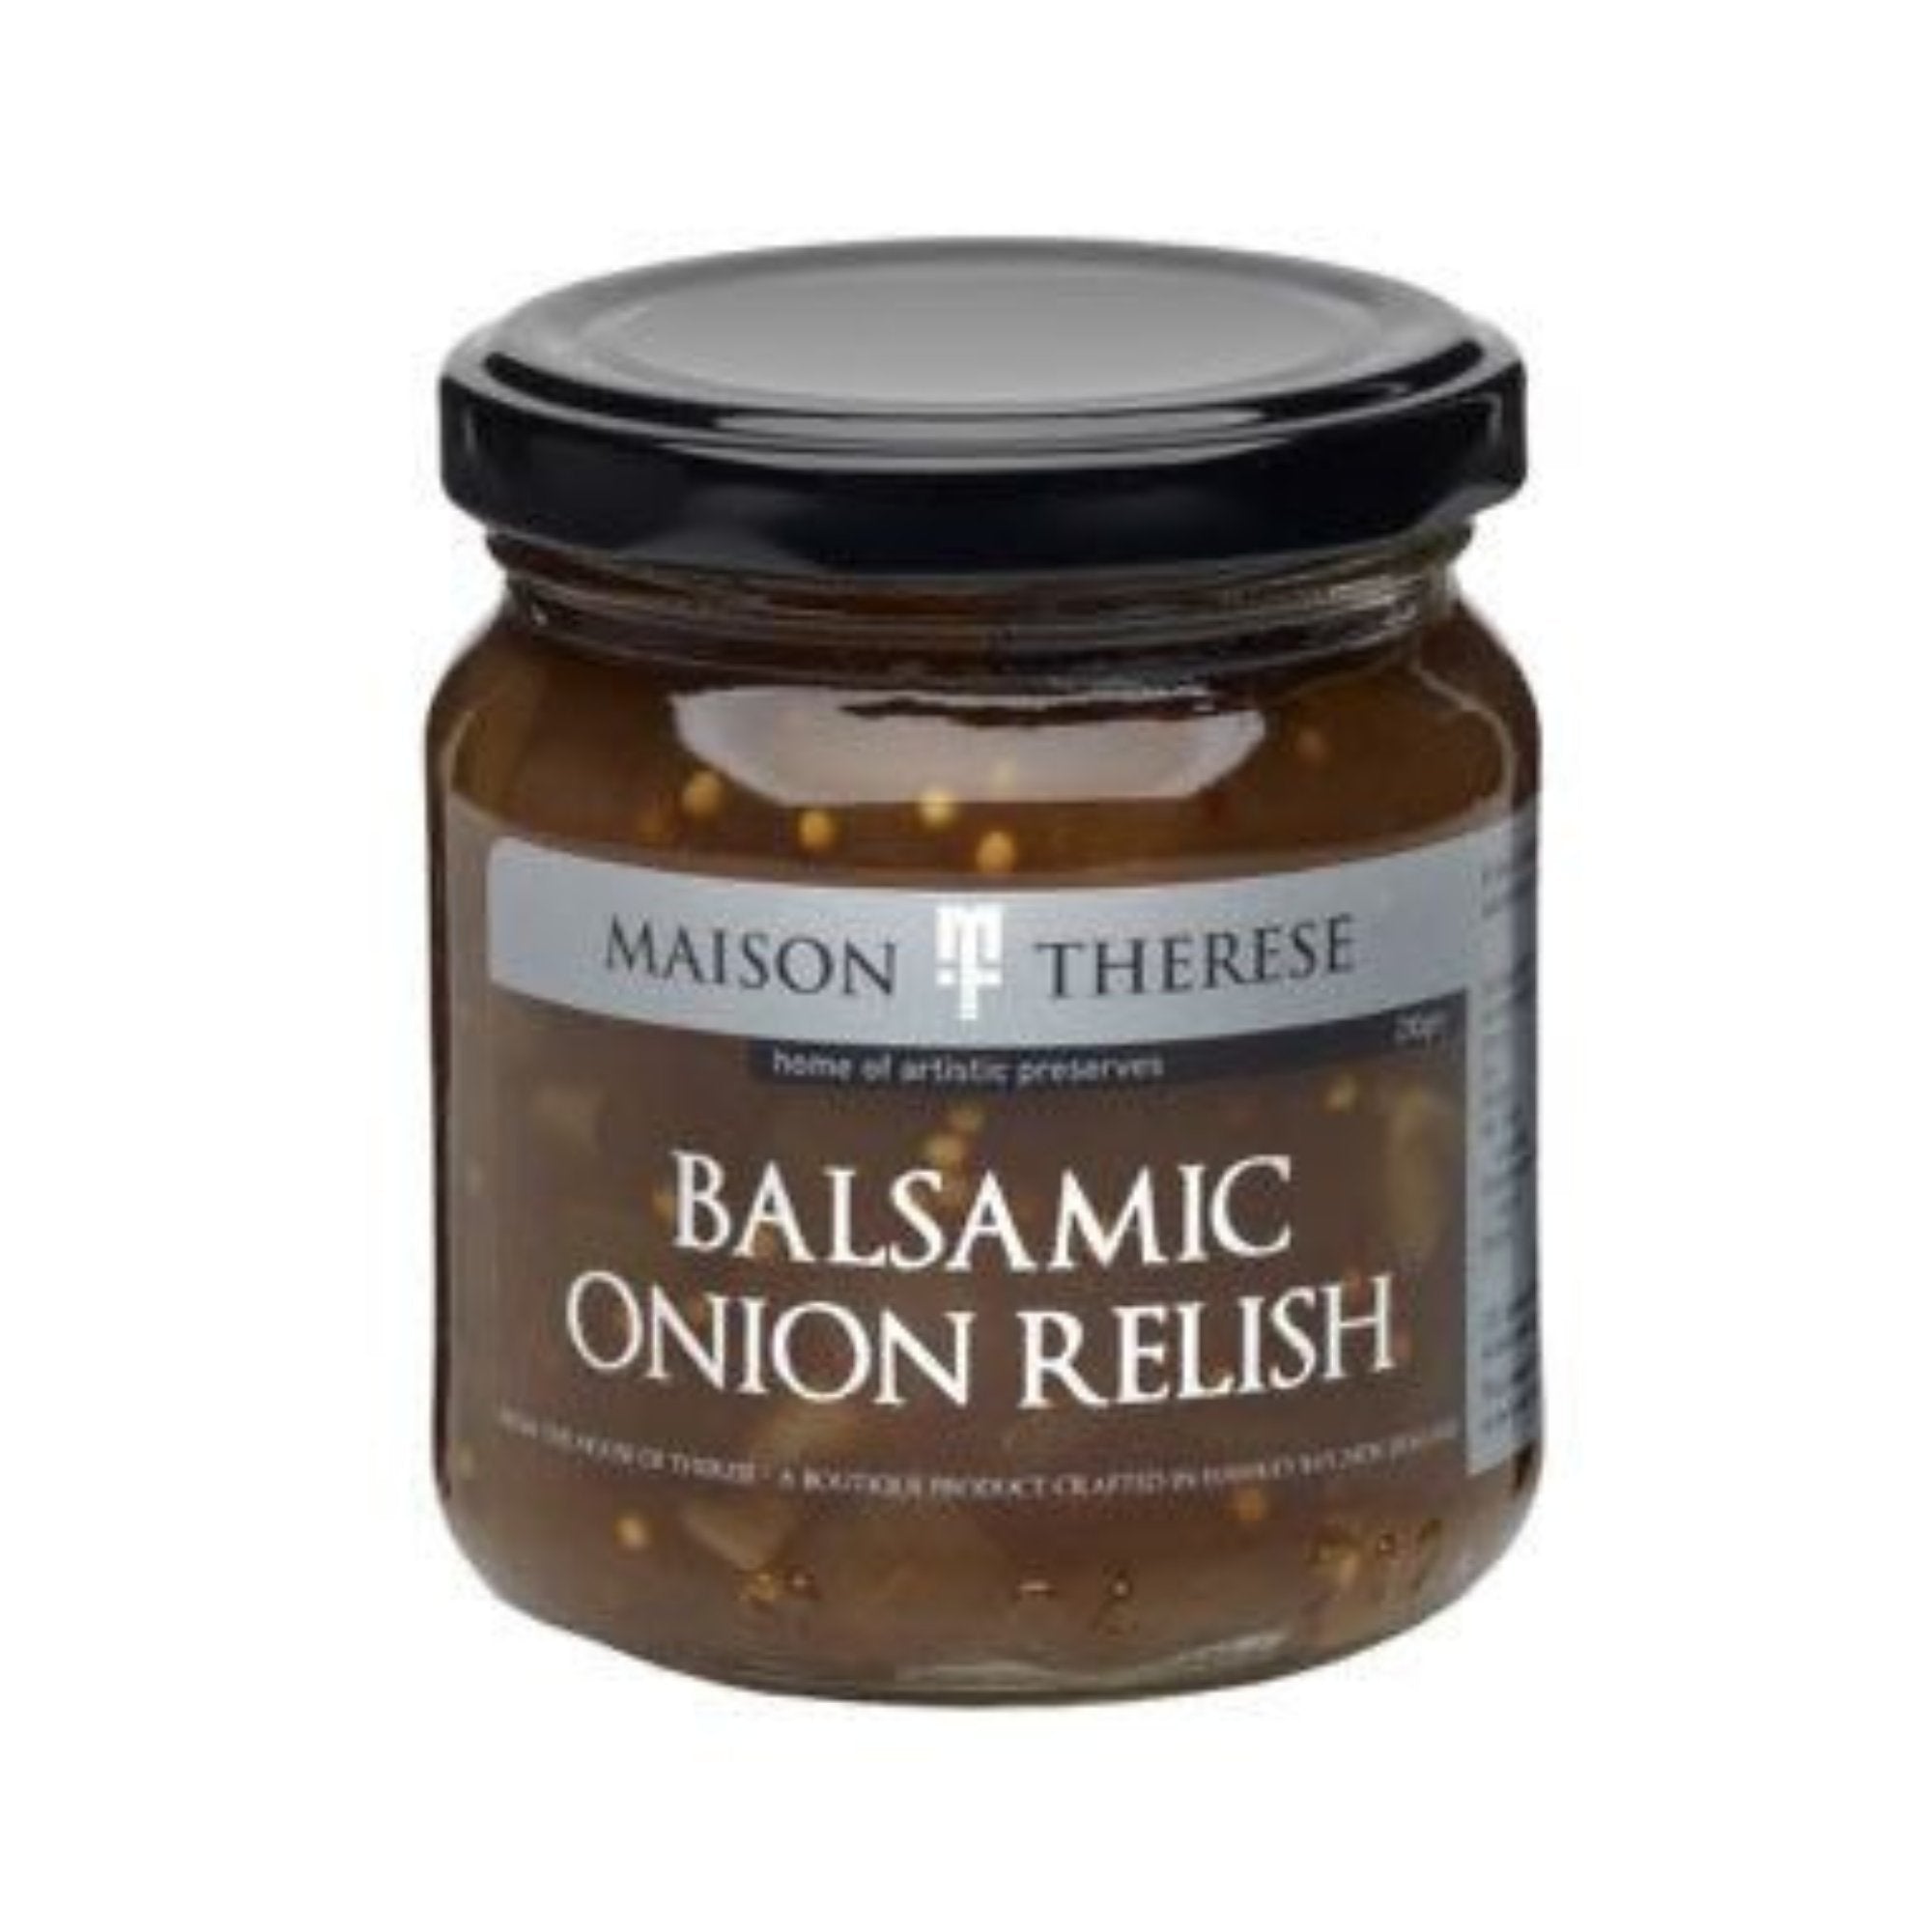 Maison Therese Balsamic Onion Relish 210g (GF) - Beautiful Gifts